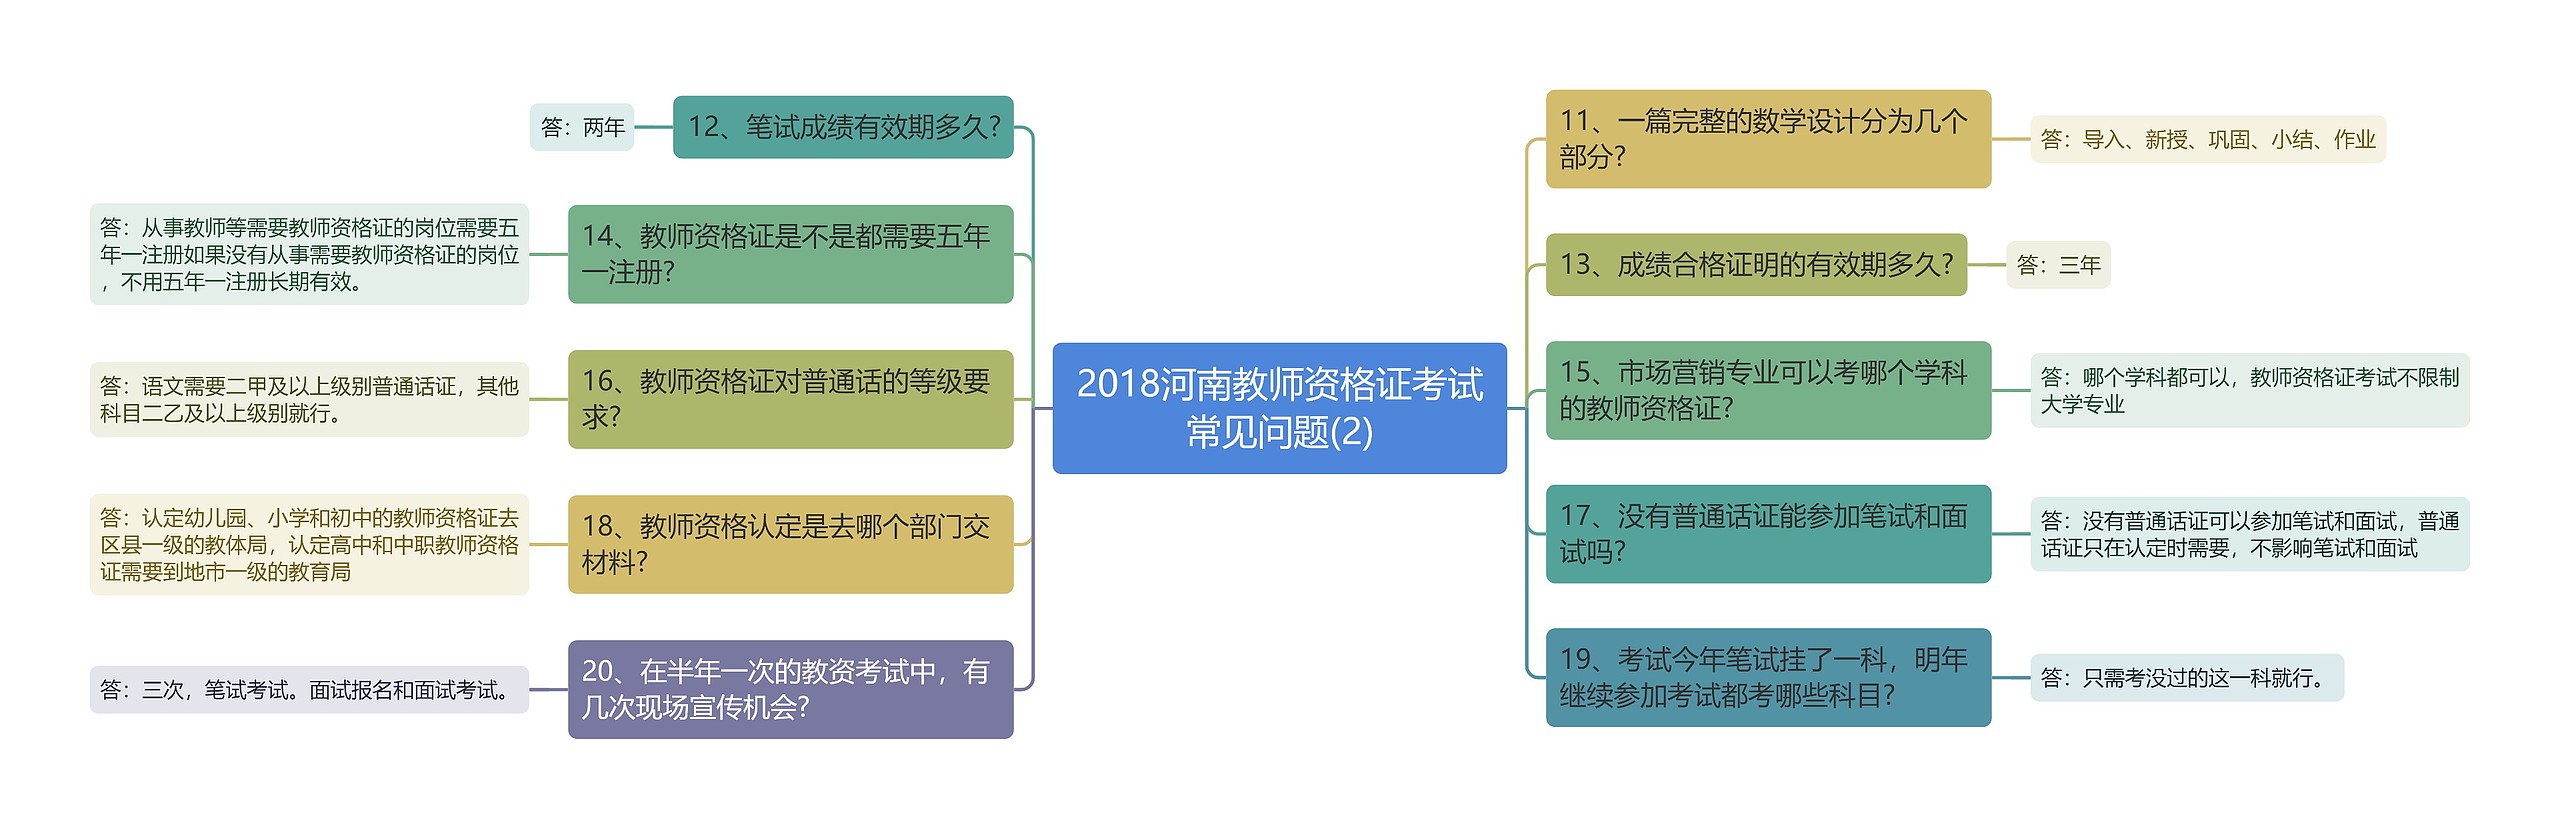 2018河南教师资格证考试常见问题(2)